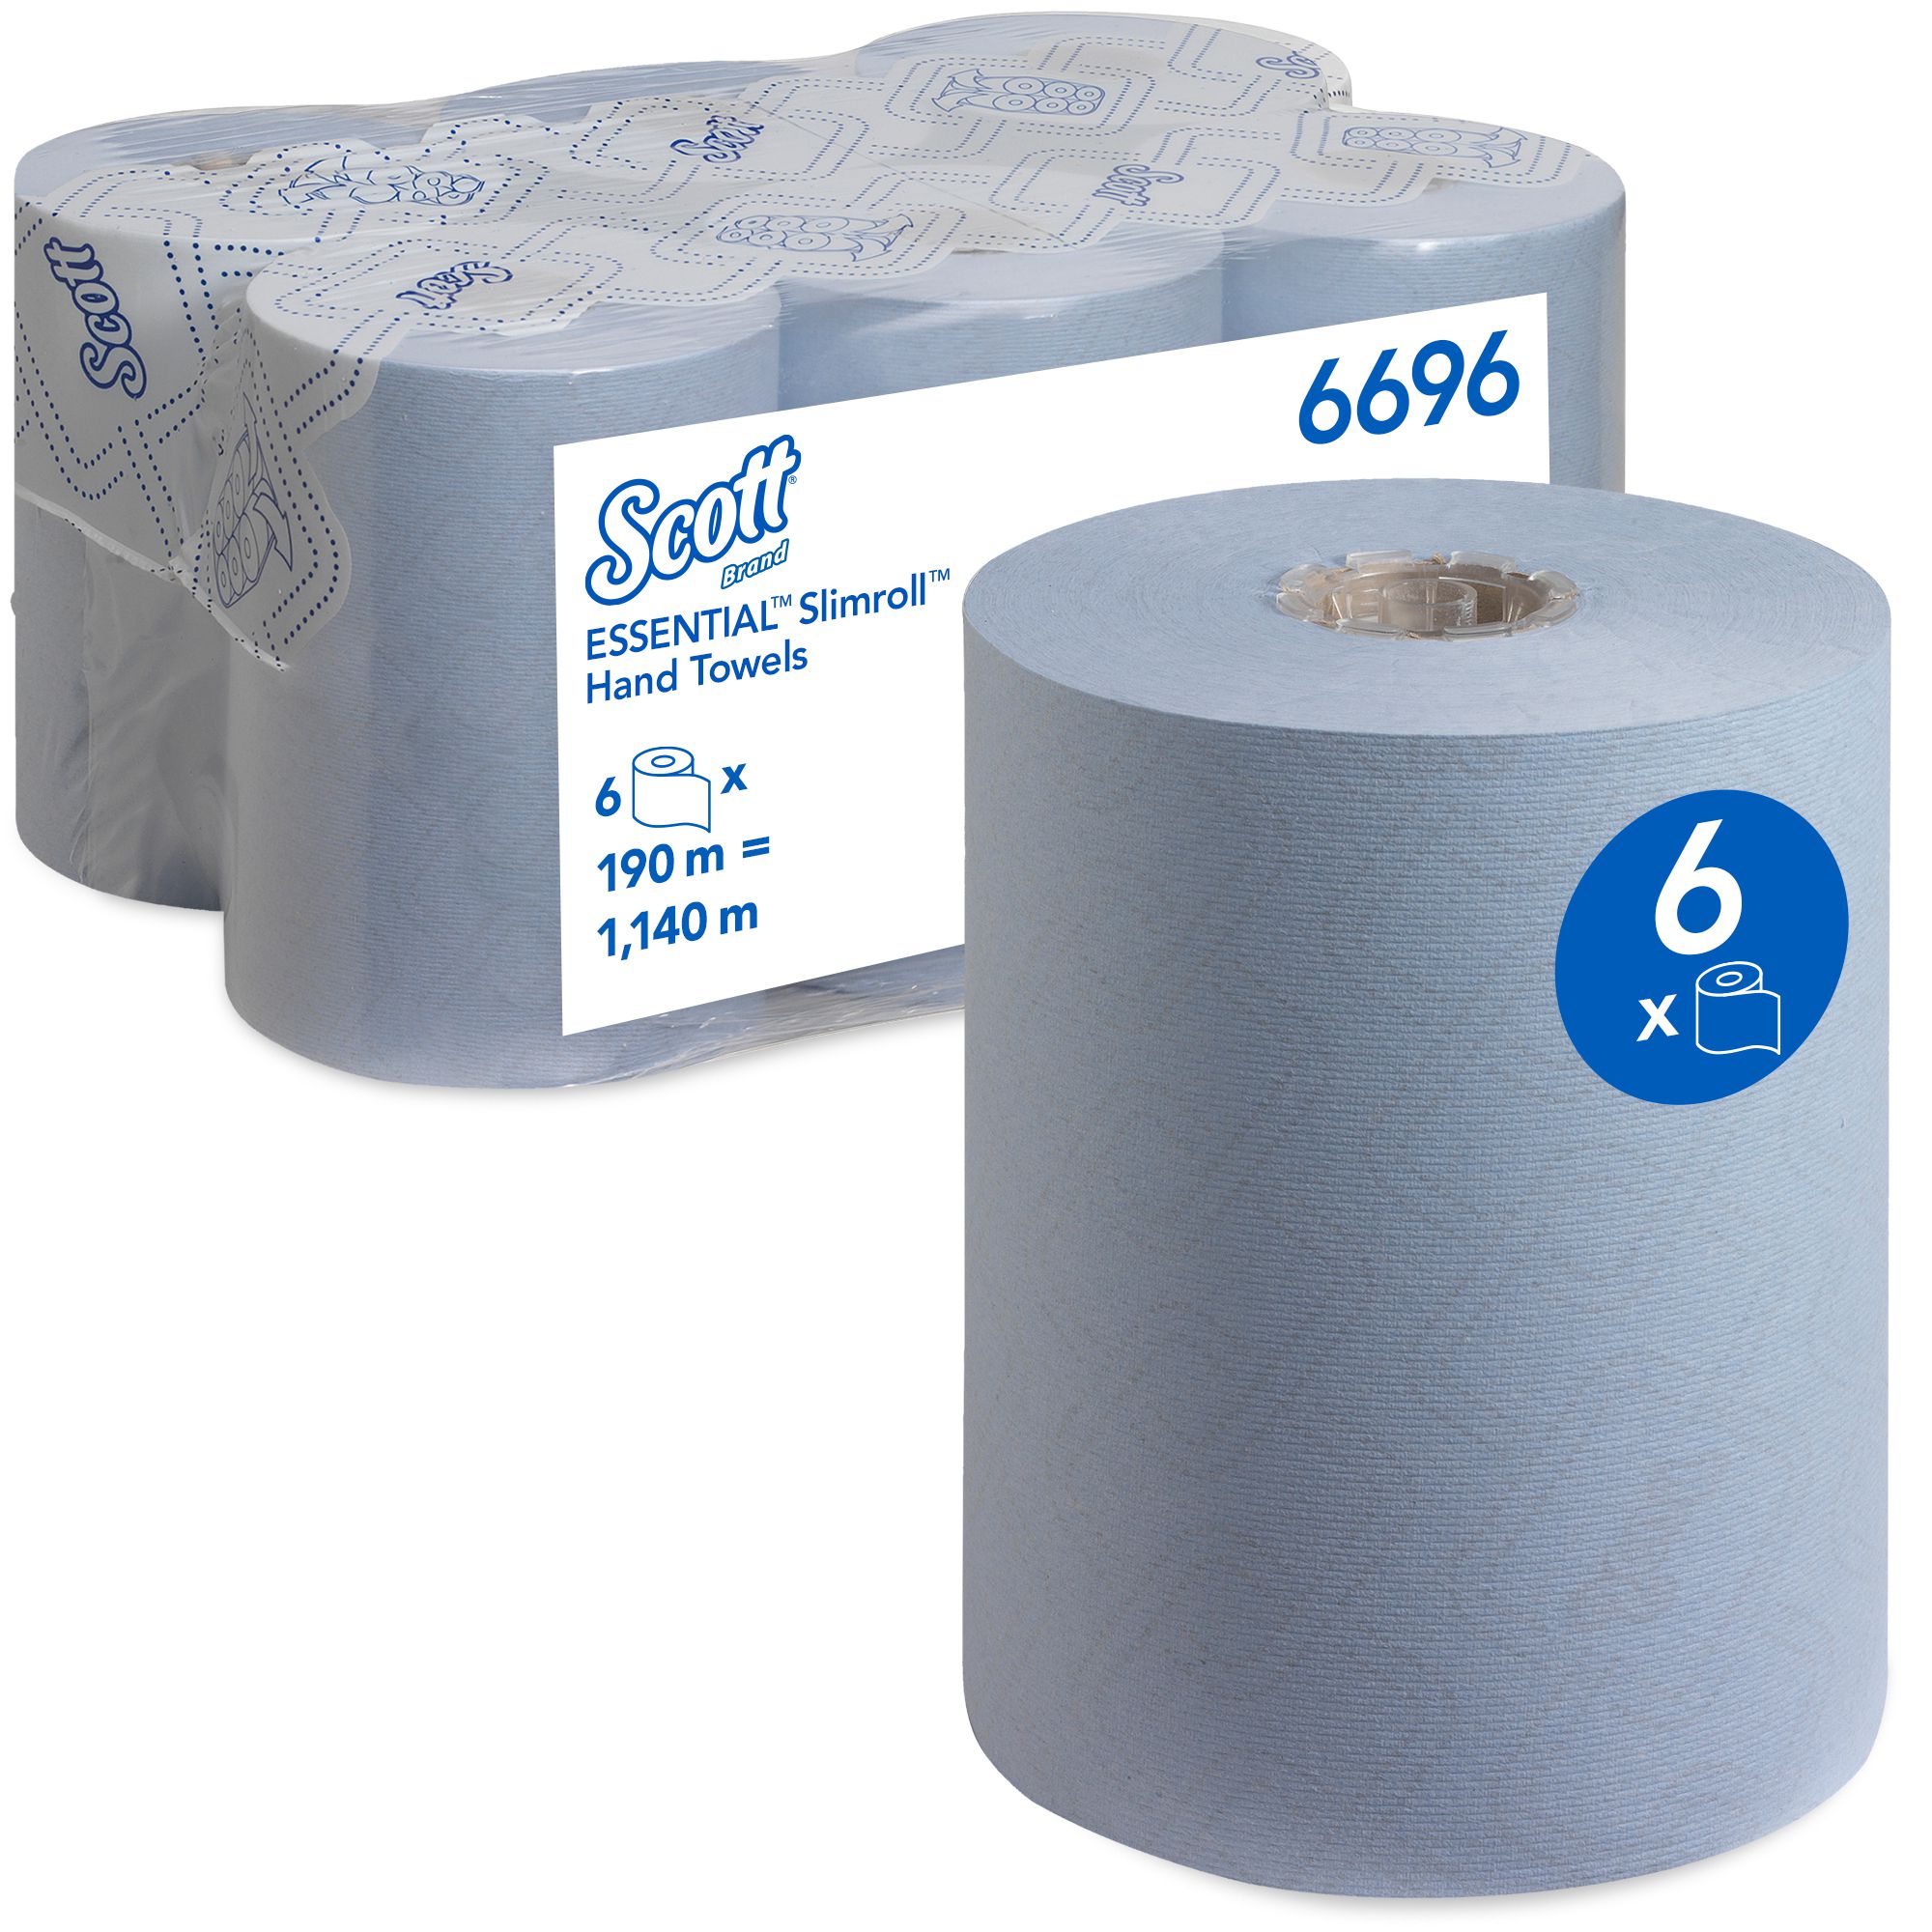 6696 Бумажные полотенца в рулонах Scott Essential Slimroll - 6 рулонов по 190 метров